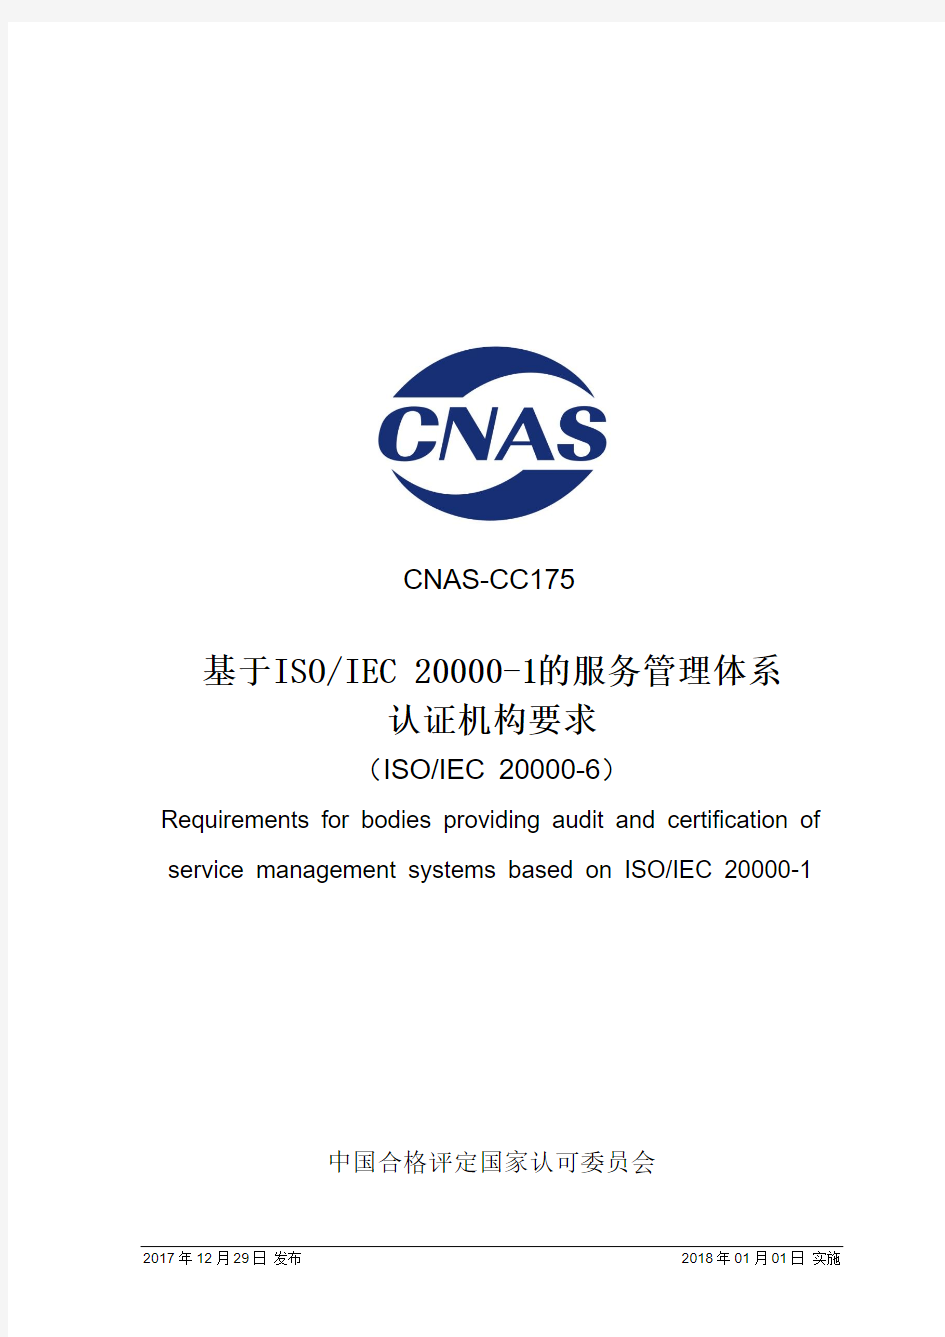 基于ISOIEC20000-1的服务管理体系认证机构要求